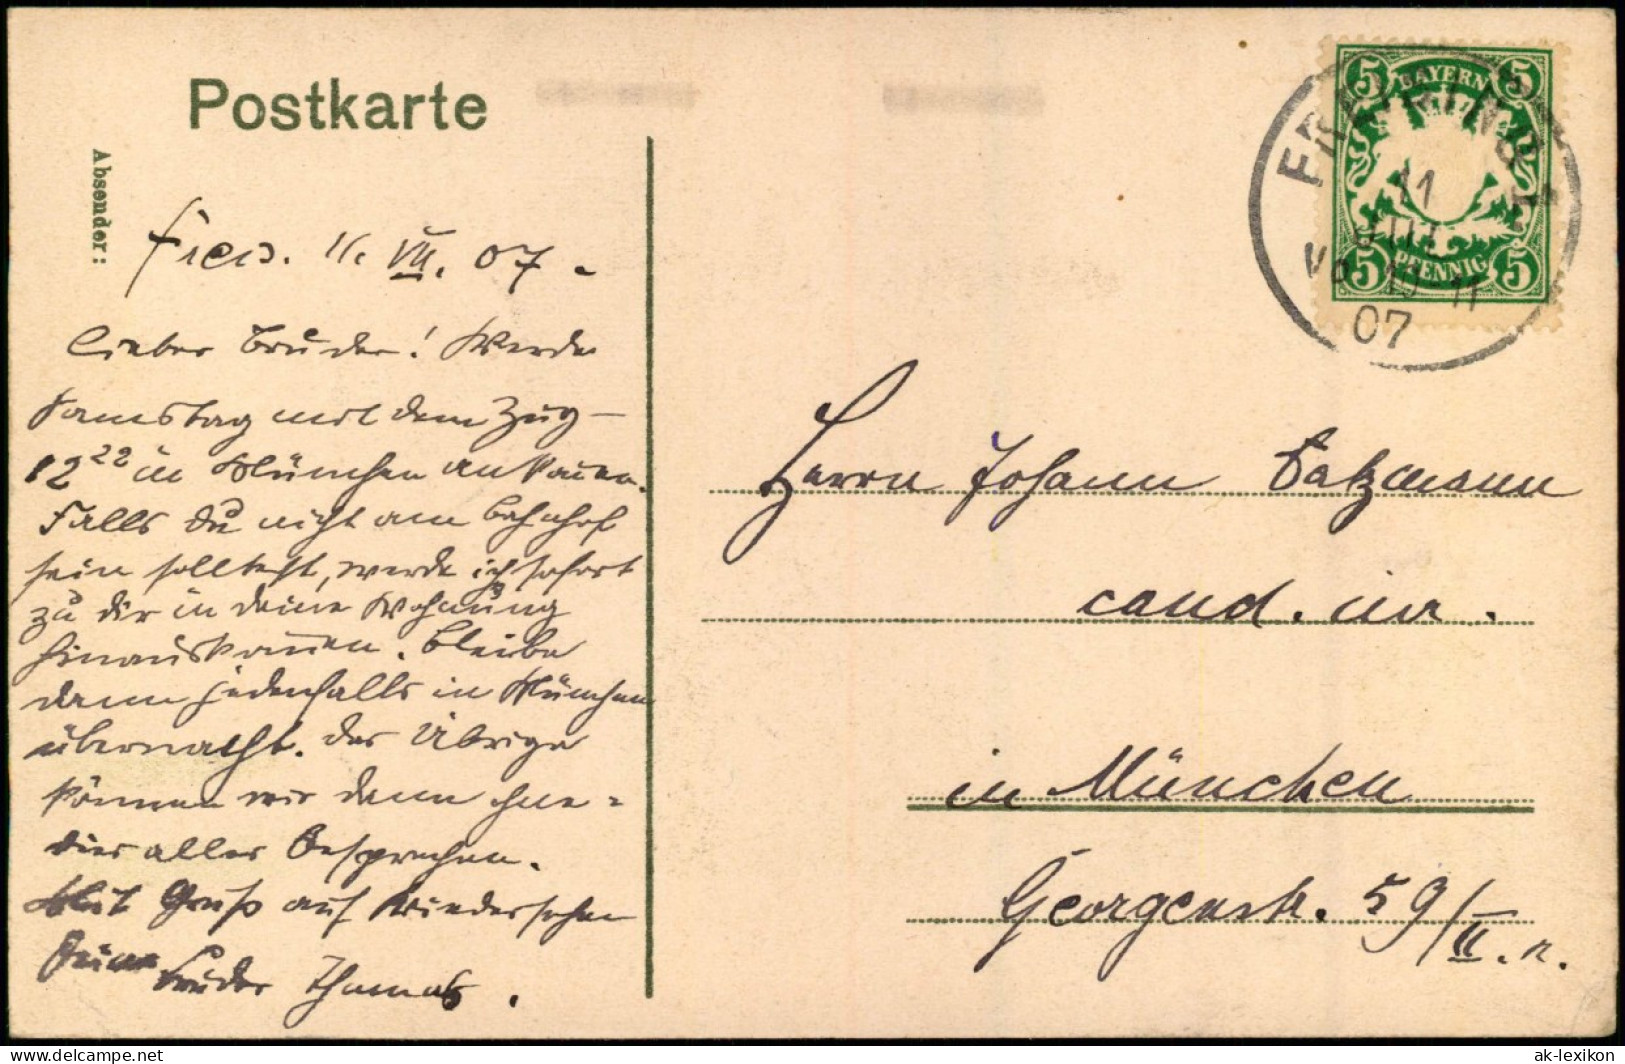 Ansichtskarte Freising Alt-Öttinger Kapelle Und Klerikal-Seminar. 1906 - Freising